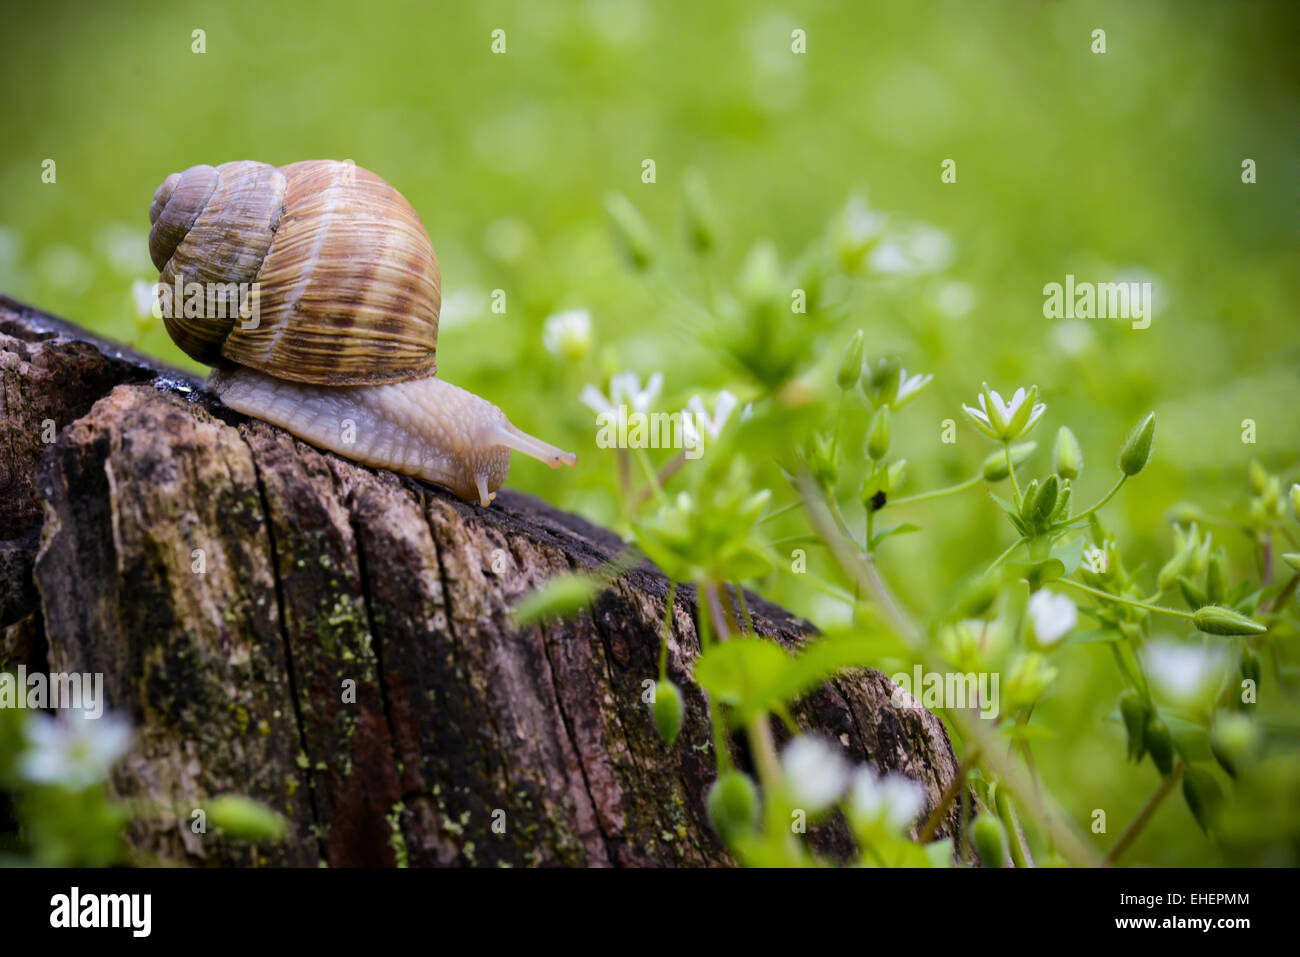 Snail seduto su un tronco di albero in una giornata di primavera Foto Stock